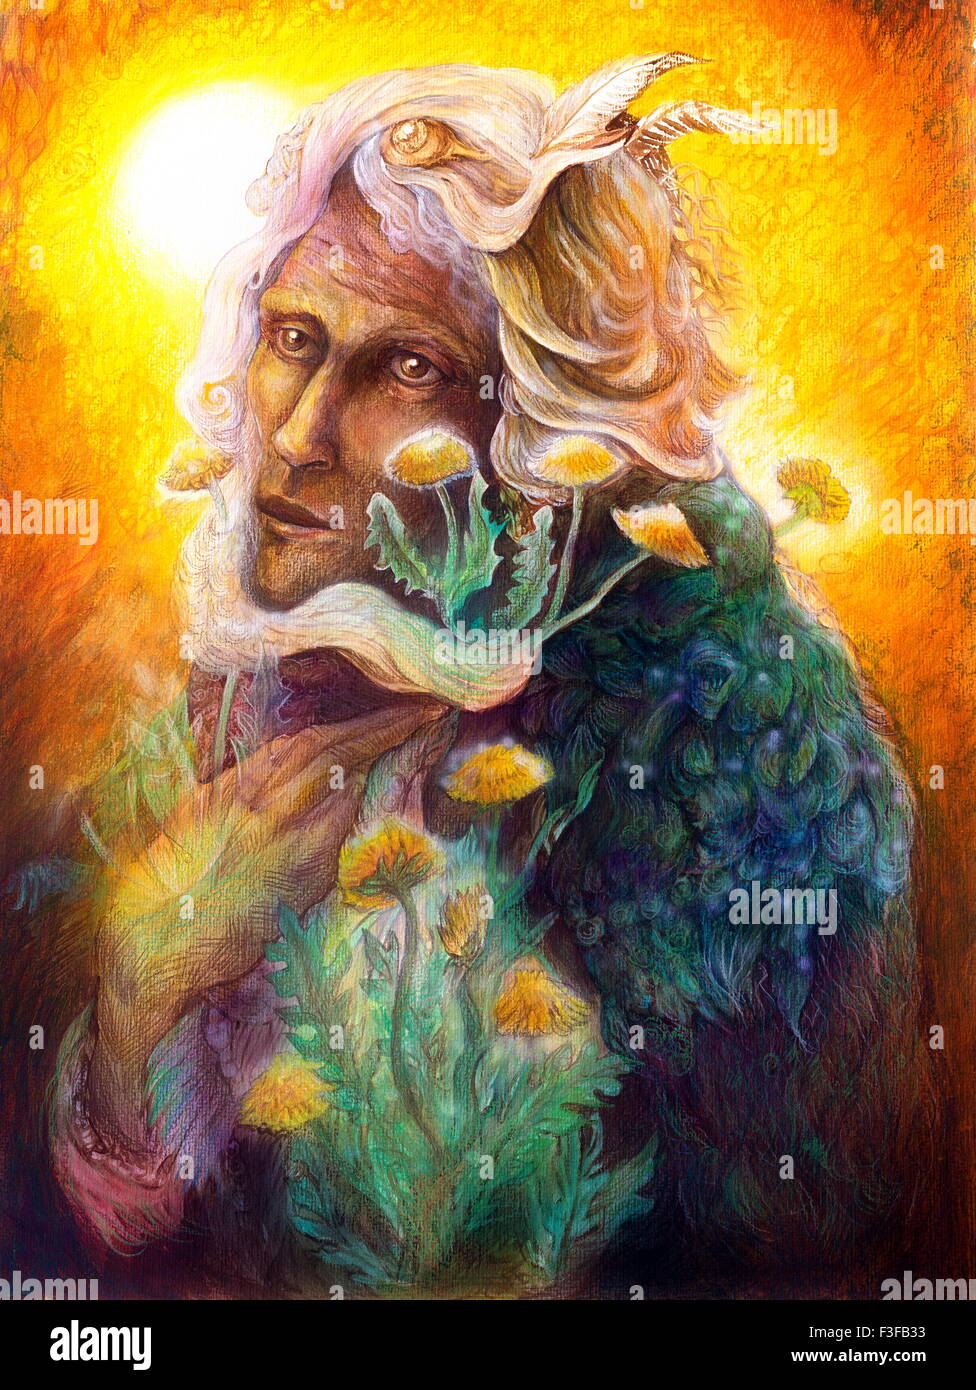 Fantasy elven fairy man portrait avec le pissenlit, belle peinture féerique détaillées colorés d'une créature elfique et de l'énergie Banque D'Images